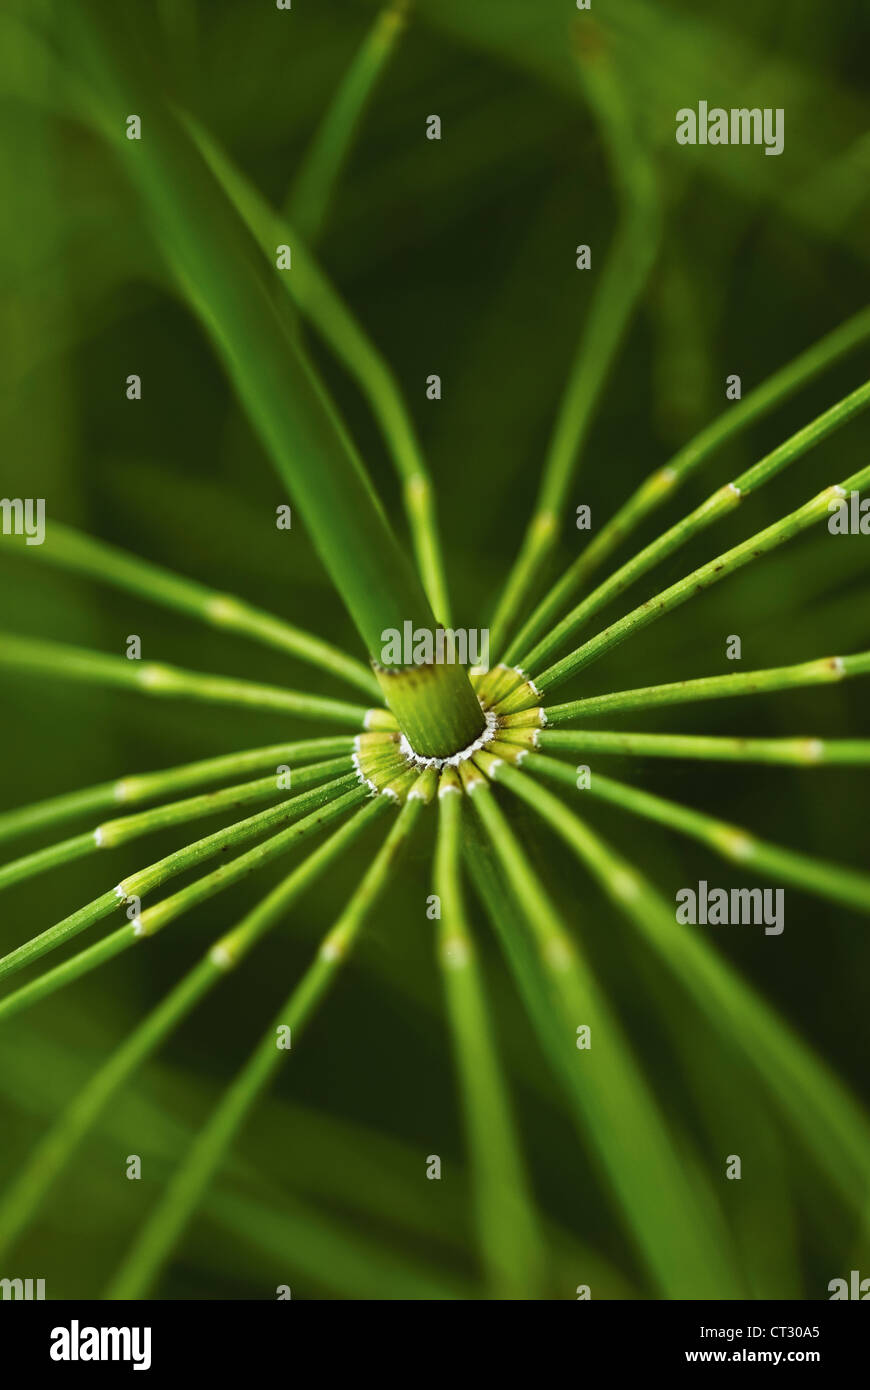 Equisetum arvense, prêle, prêle des champs détail de segment articulé sur une tige verte. Banque D'Images